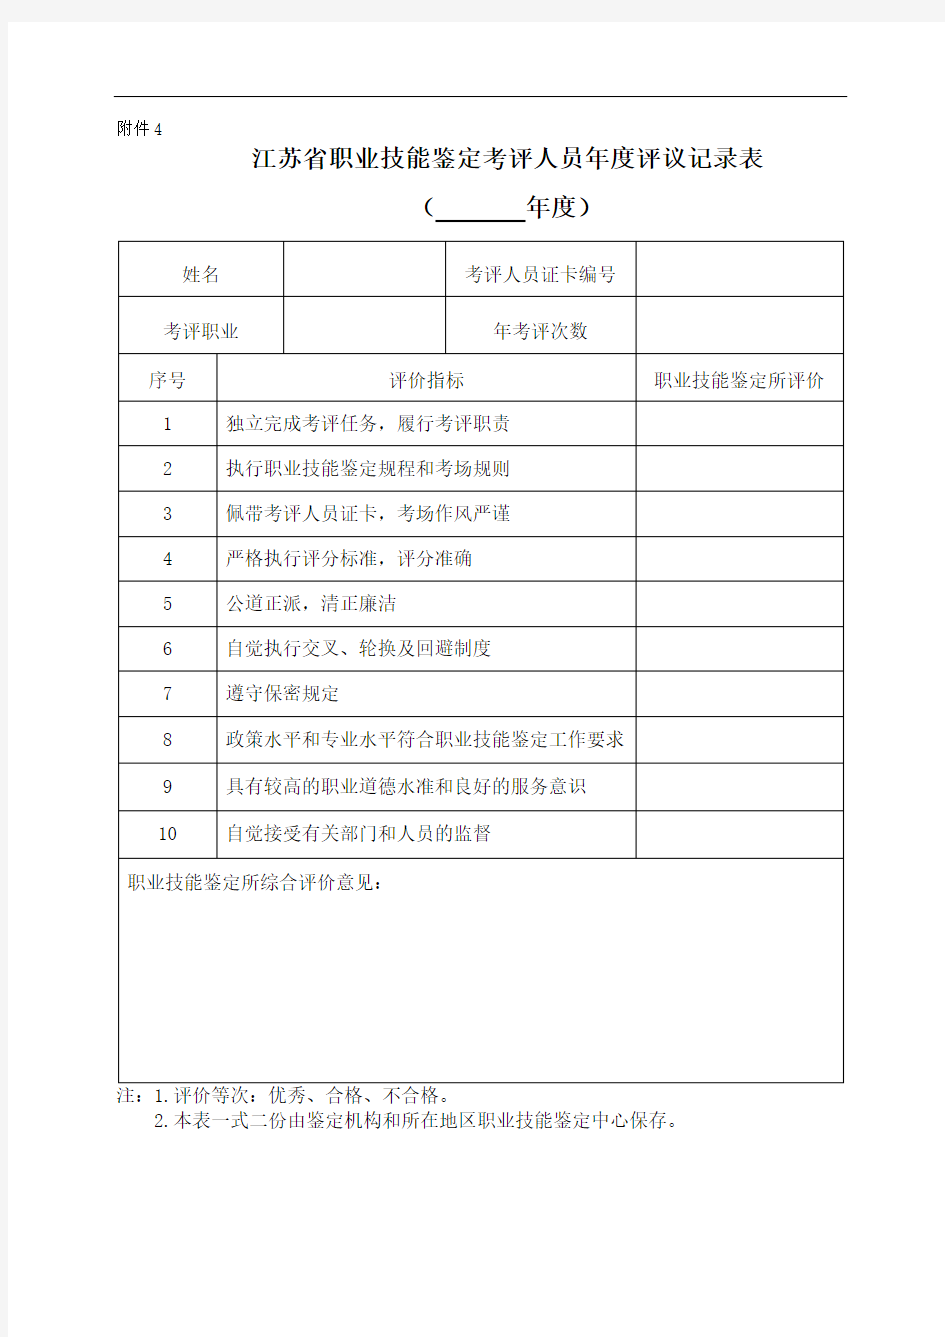 江苏省职业技能鉴定考评人员年度评议记录表